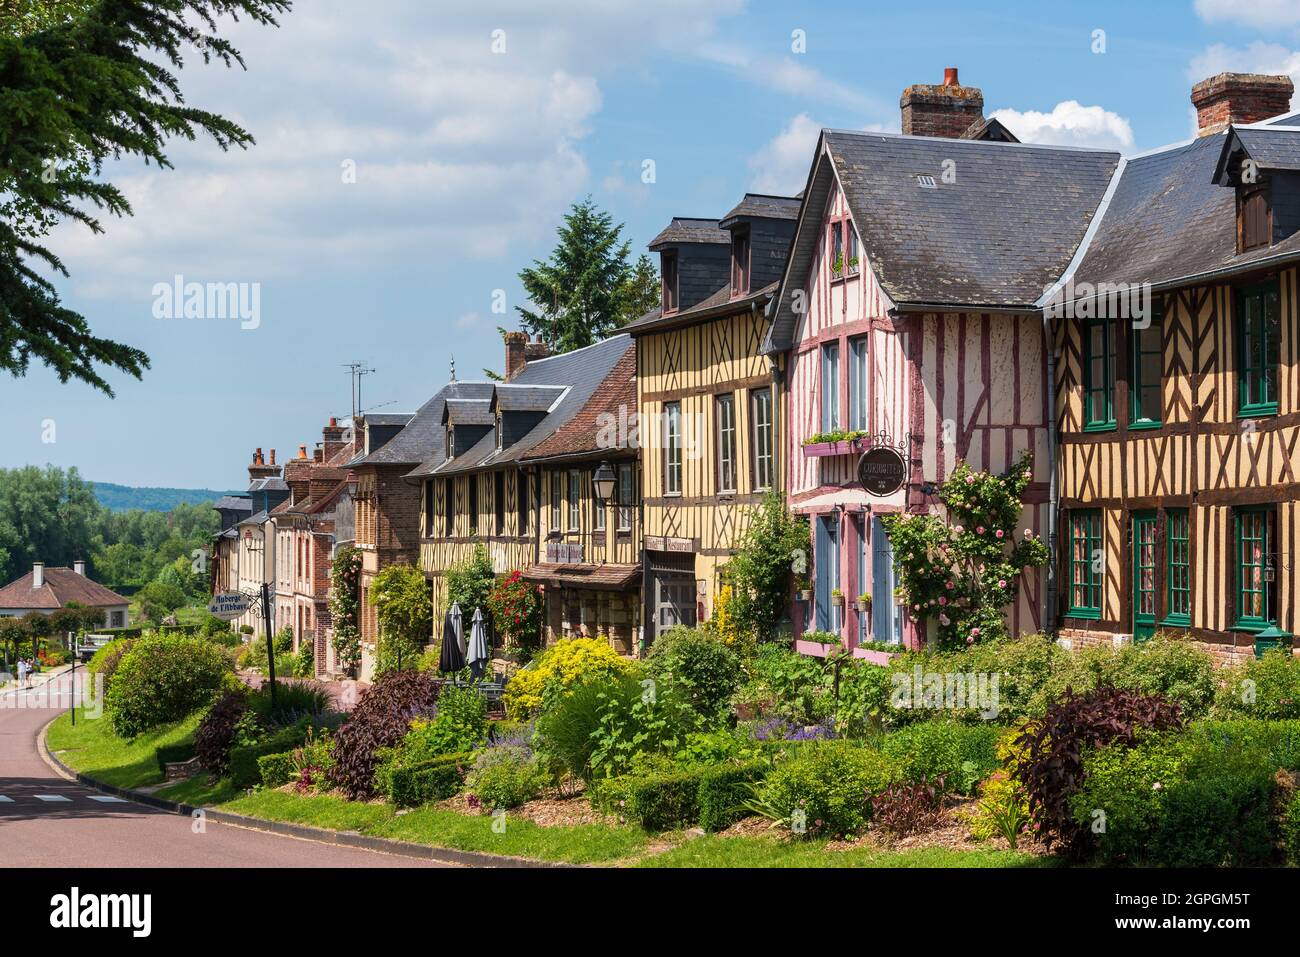 France, Eure, le bec Hellouin, étiqueté les plus Beaux villages de France (les plus beaux villages de France), maison à colombages de normand Banque D'Images